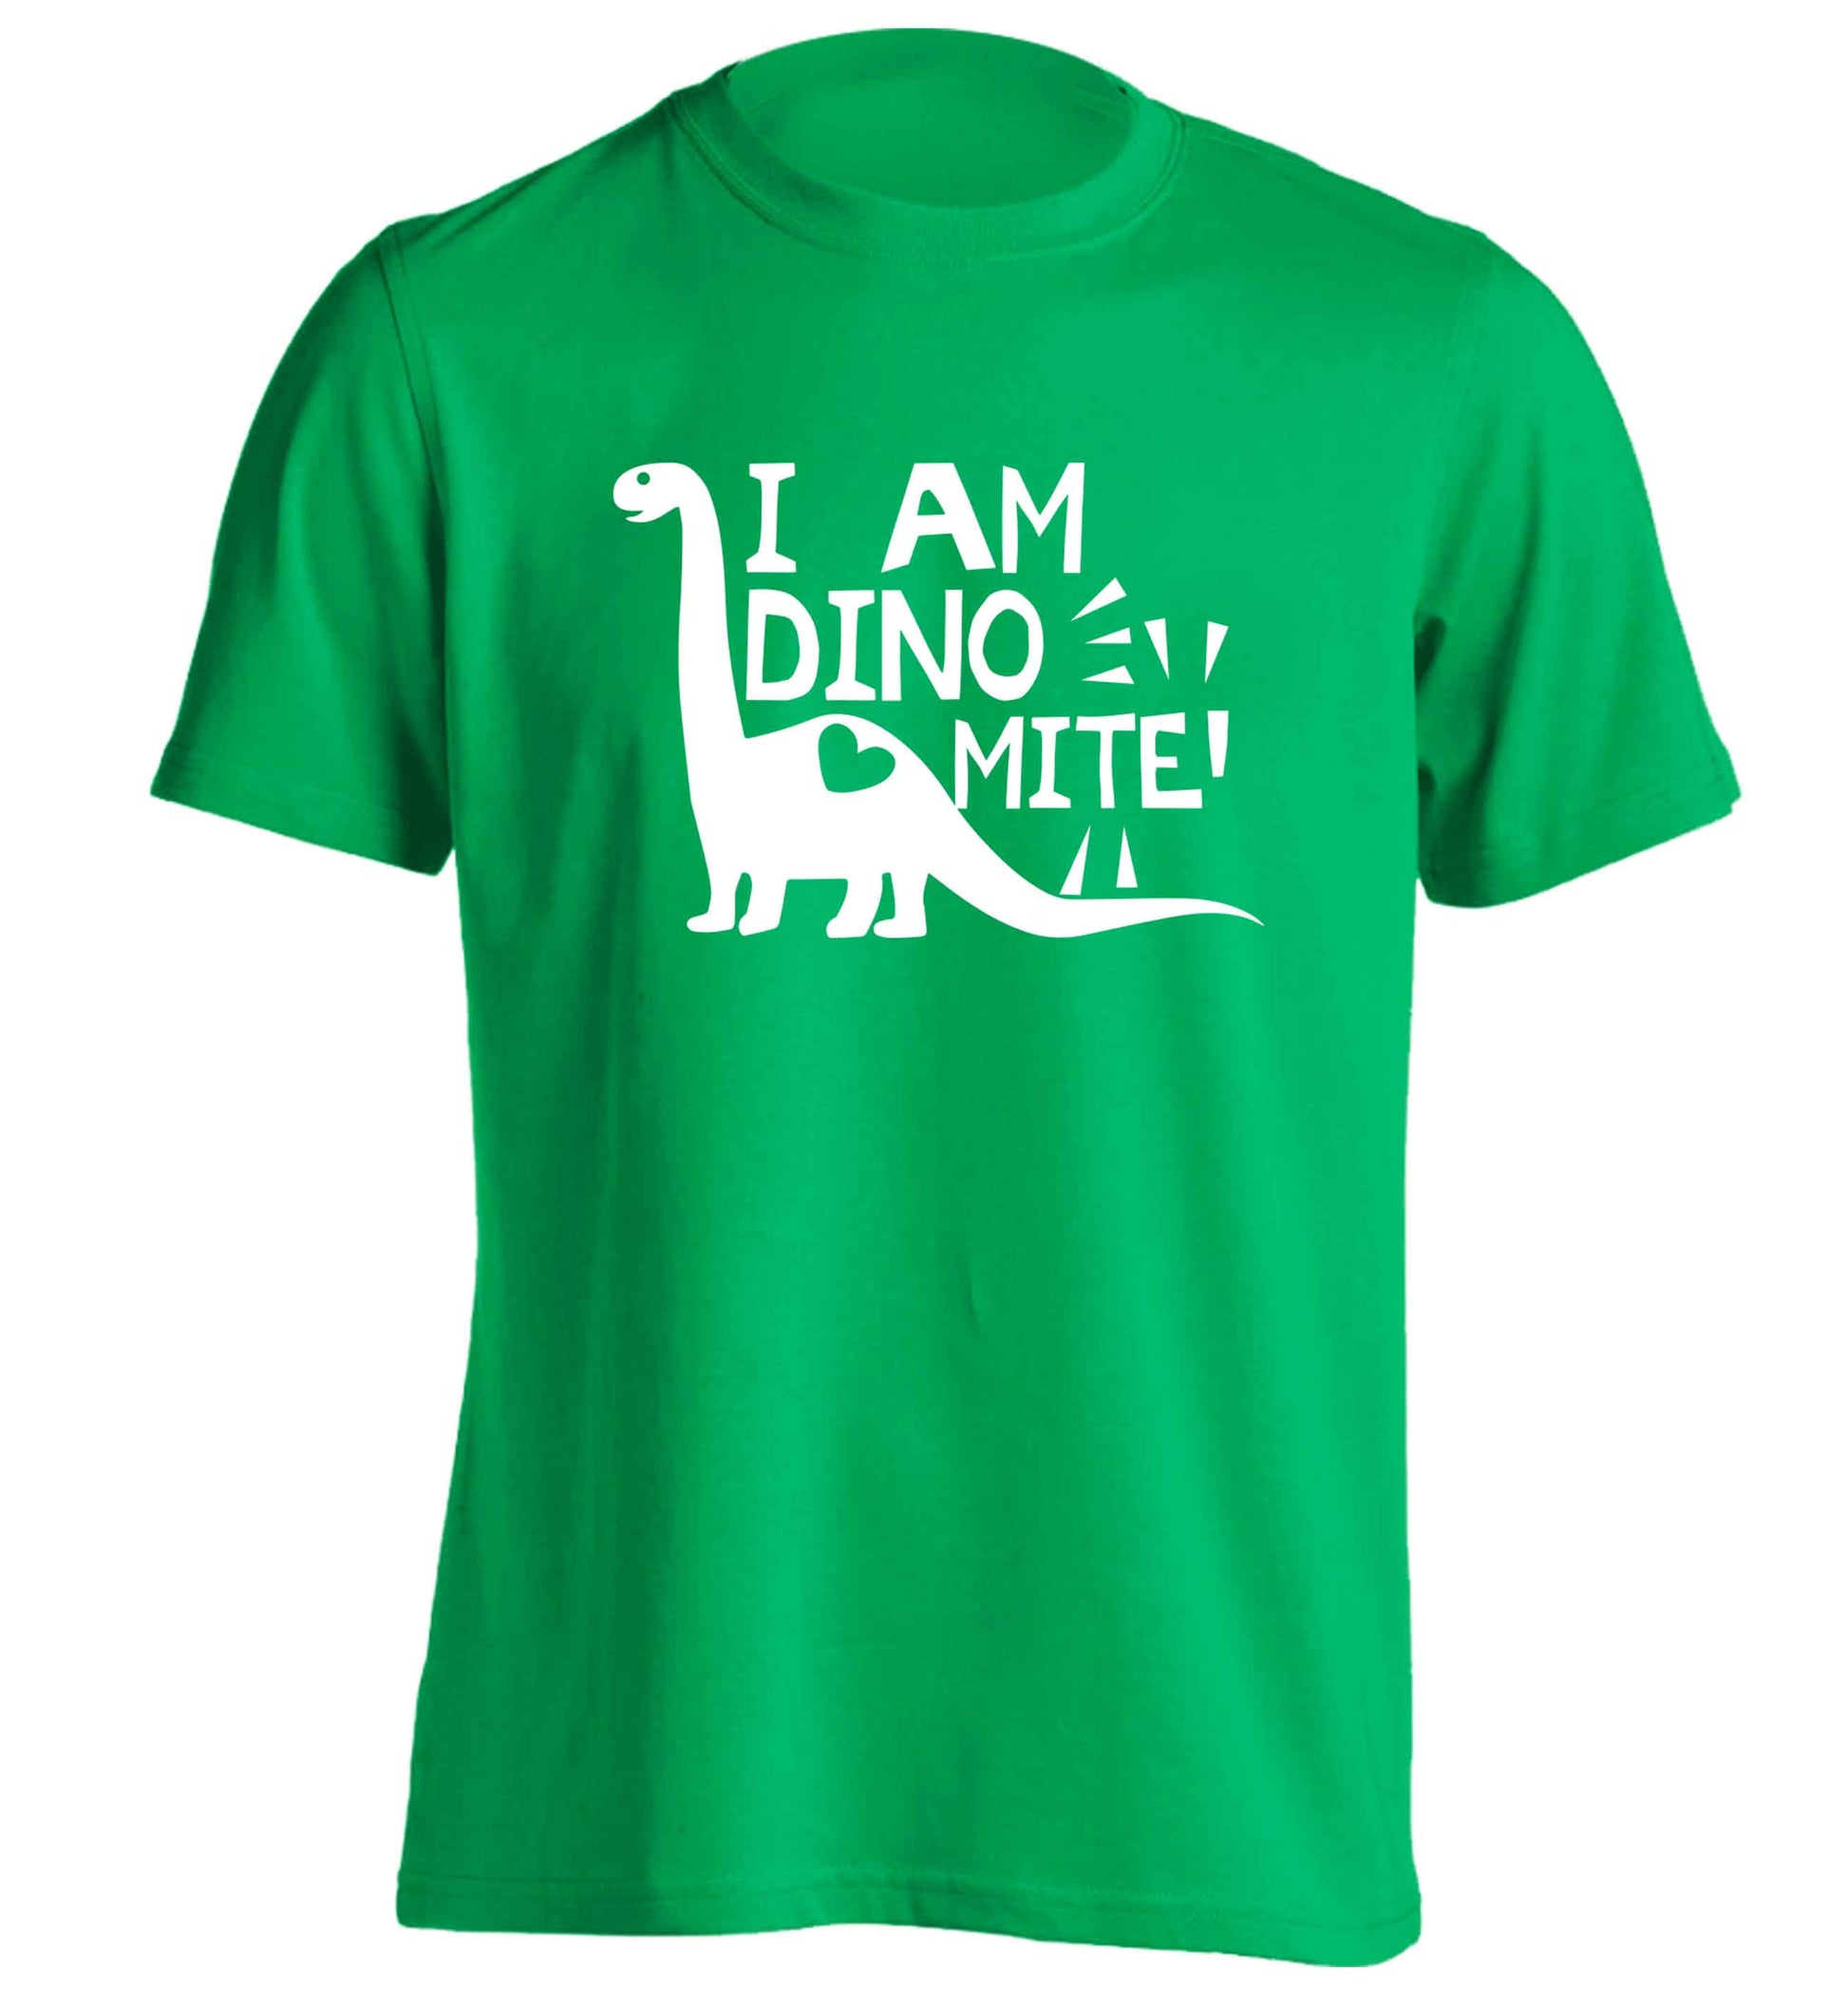 I am dinomite! adults unisex green Tshirt 2XL